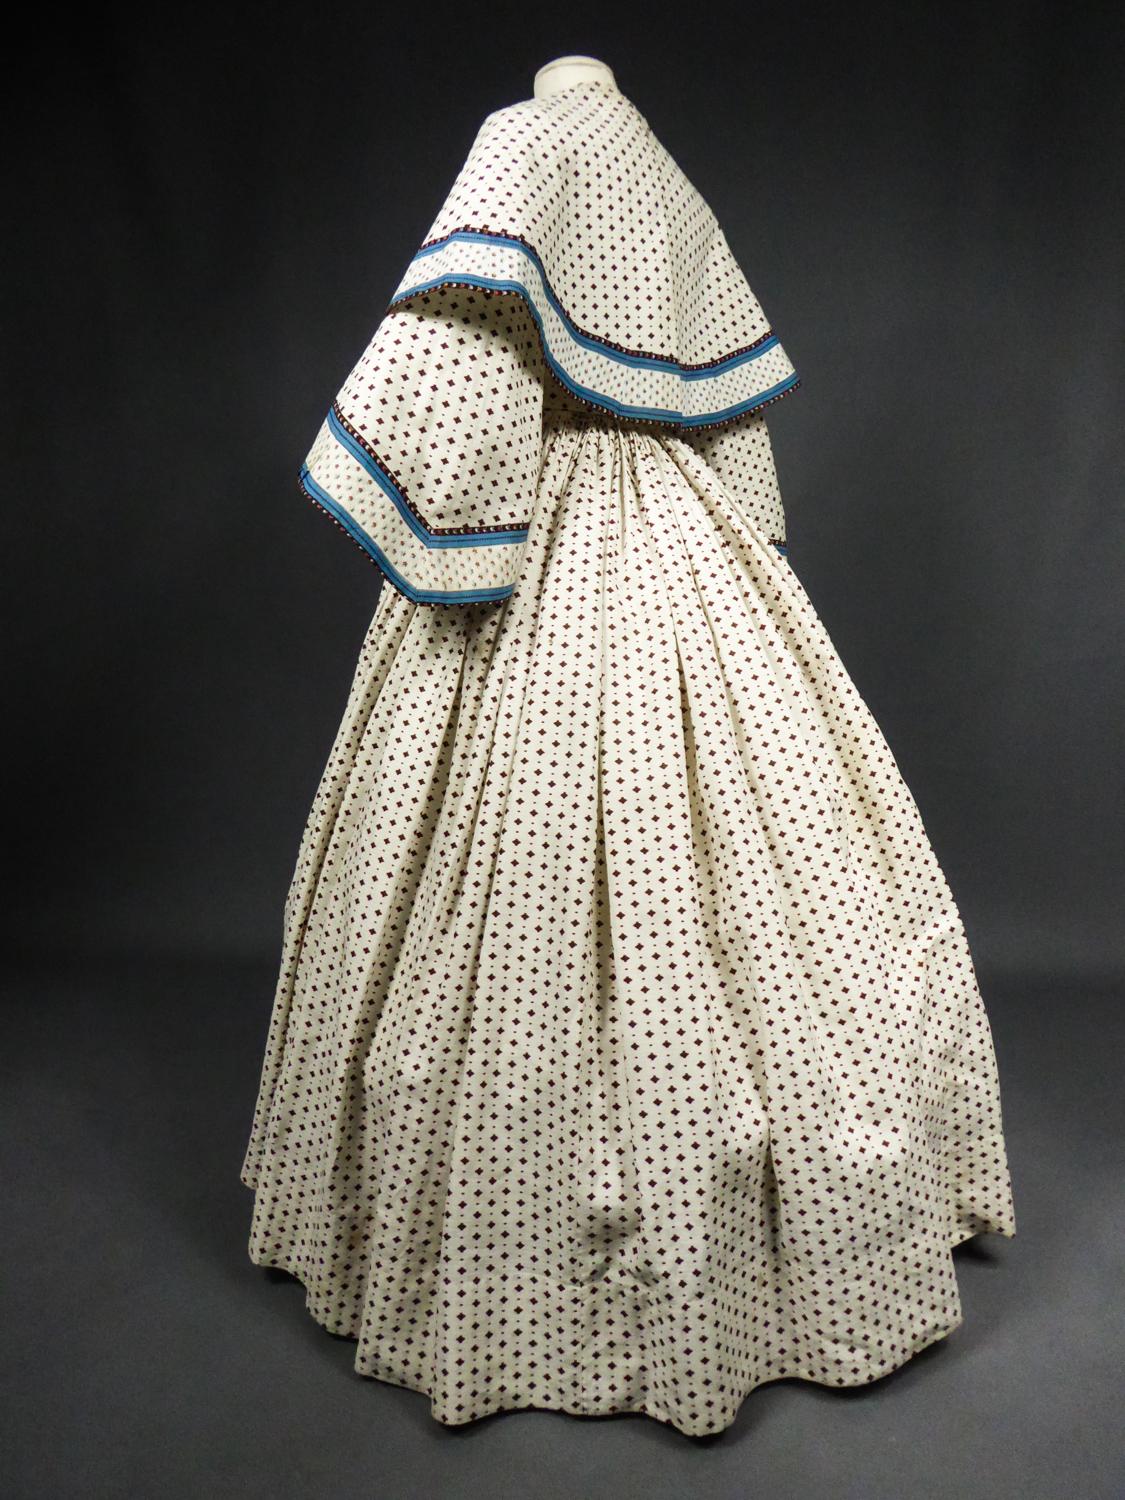 A Printed Cotton Crinoline Day Dress - France Napoleon III Period Circa 1865 3